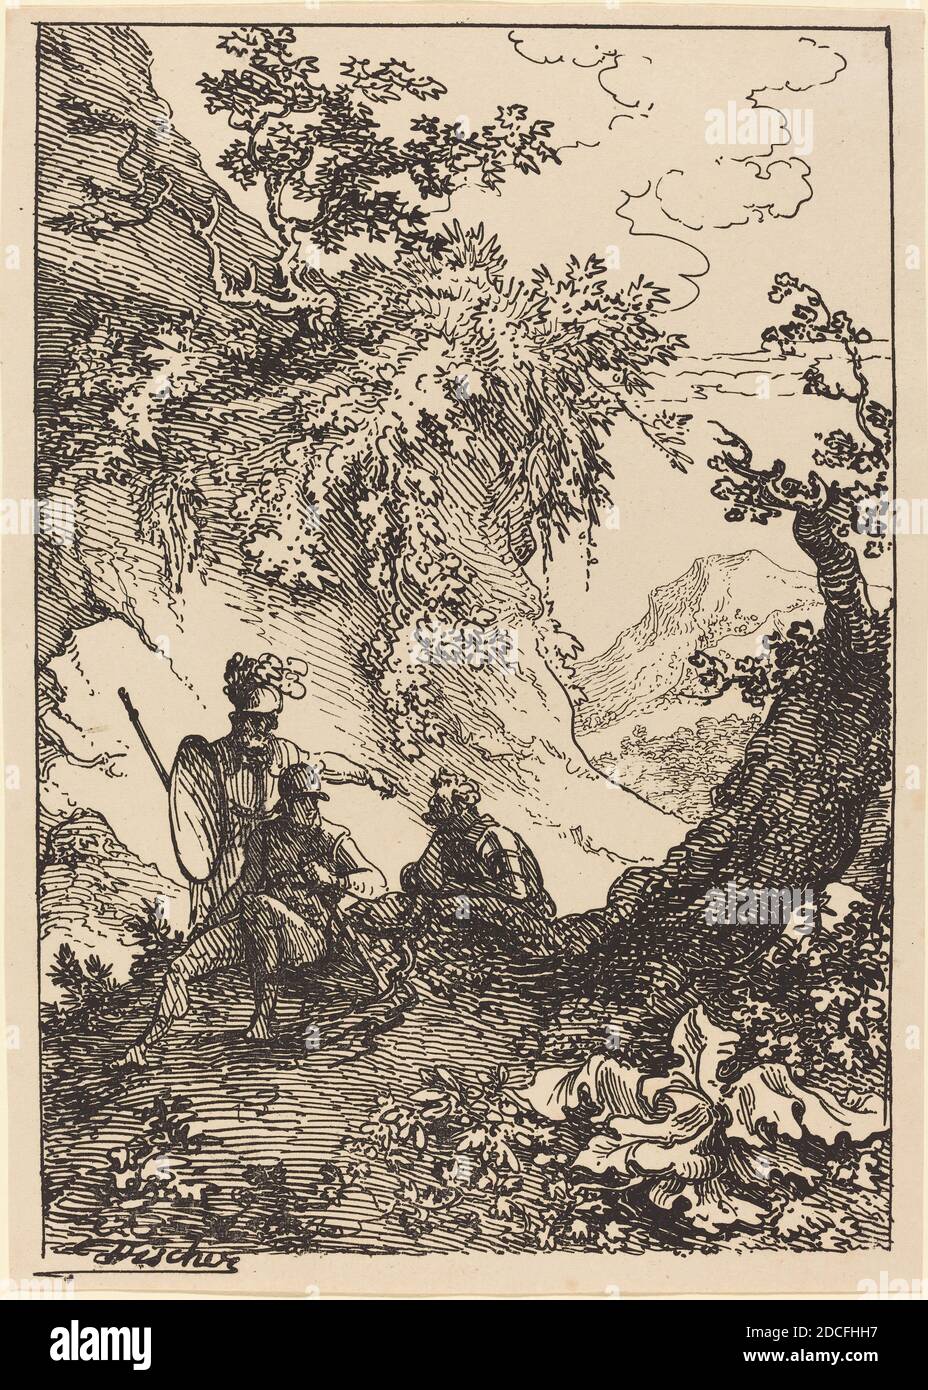 Joseph Fischer, (Künstler), Österreicher, 1769 - 1822, Landschaft mit  Männern in der Rüstung, Baumstumpf, Exemplare der Polyautographie, (Serie),  1803, Stift-und-tusche Lithographie Stockfotografie - Alamy